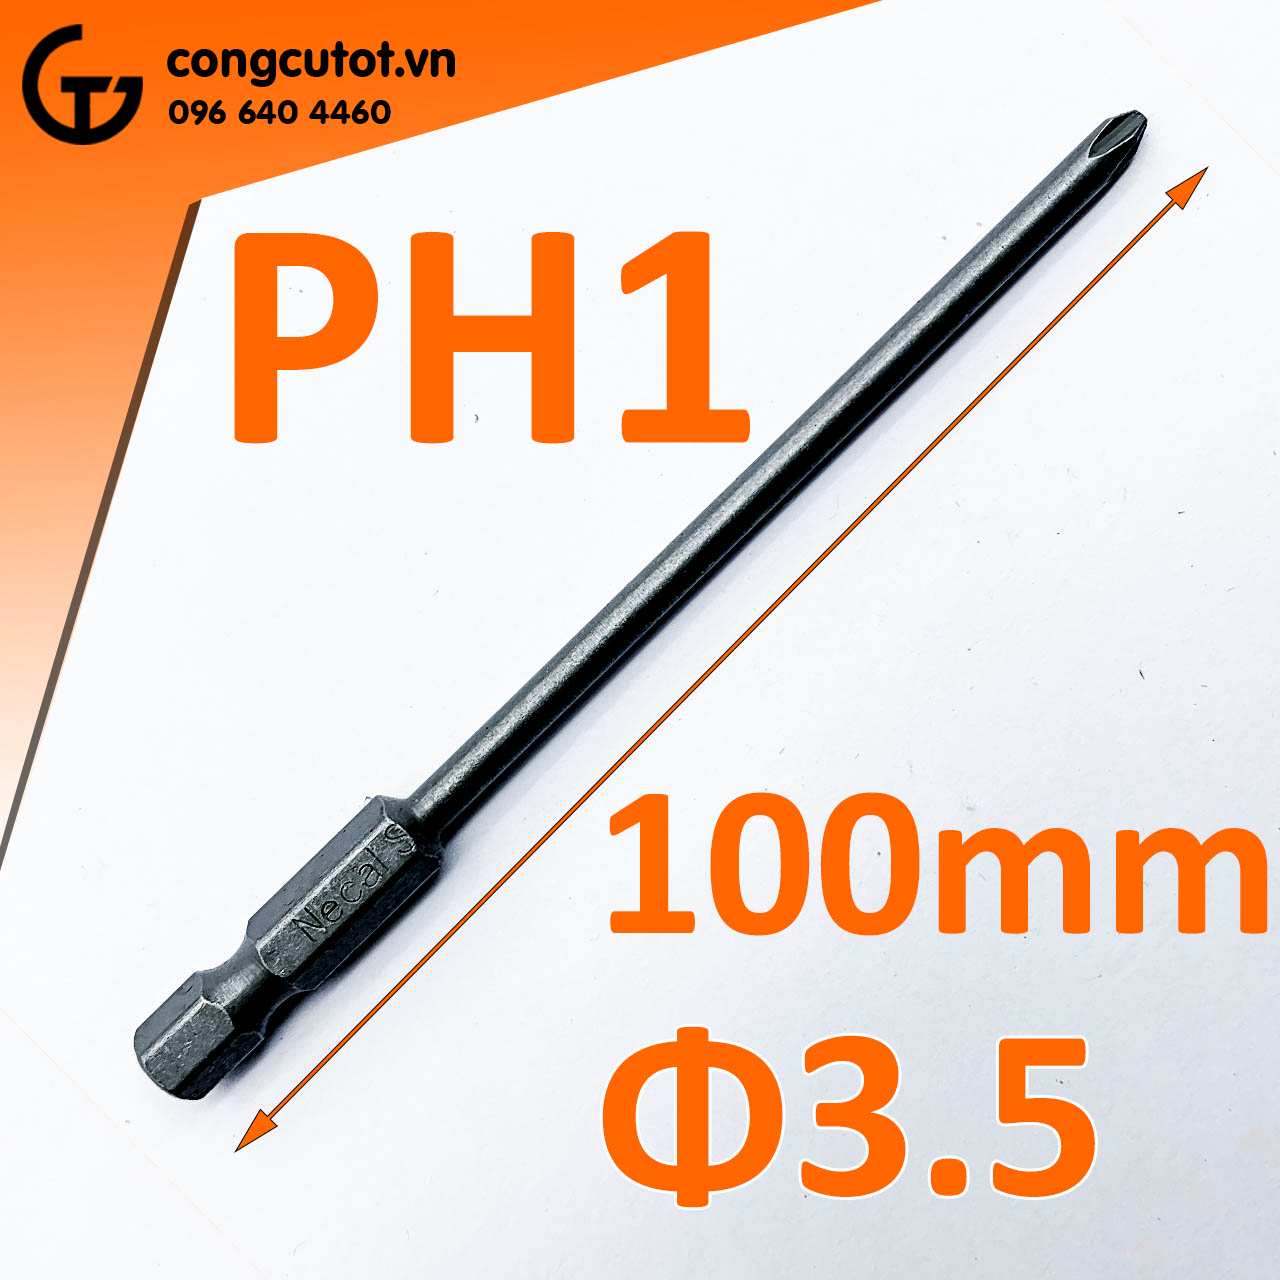 Đầu bắt vít 4 cạnh PH1 Φ3.5 dài 100mm chuôi lục thép S2 - Sản phẩm chất lượng cho công việc chính xác và nhanh chóng.